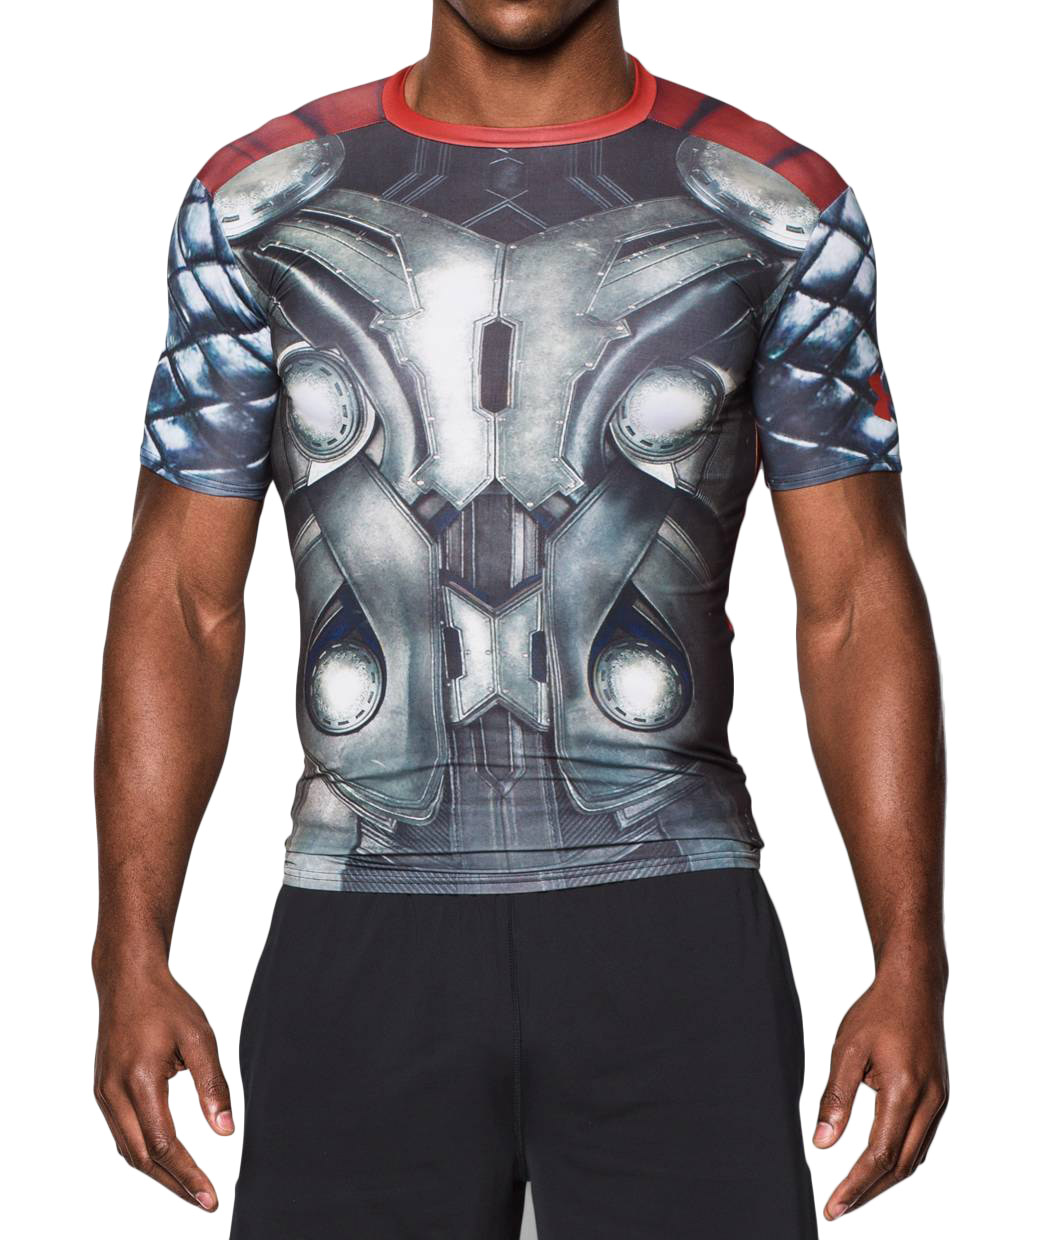 Comité Inapropiado Repelente T-shirt para hombre Alter Ego de Thor Compresión colore negro rojo - Under  Armour - SportIT.com